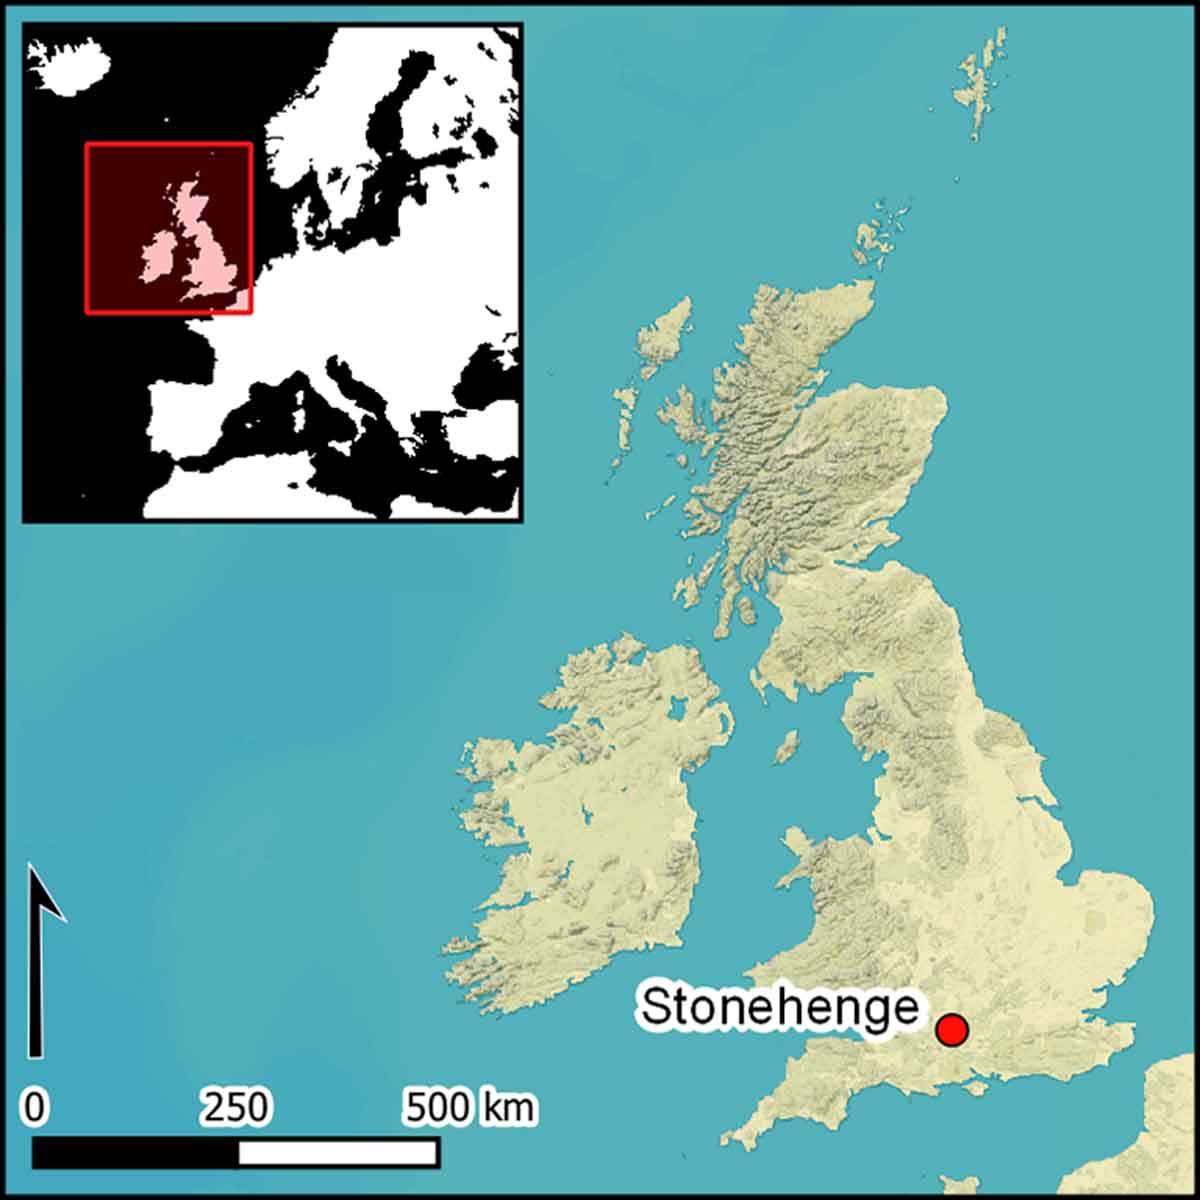 El Stonehenge está ubicado en las tierras bajas calcáreas del sur de Gran Bretaña / Imagen: Antiquity